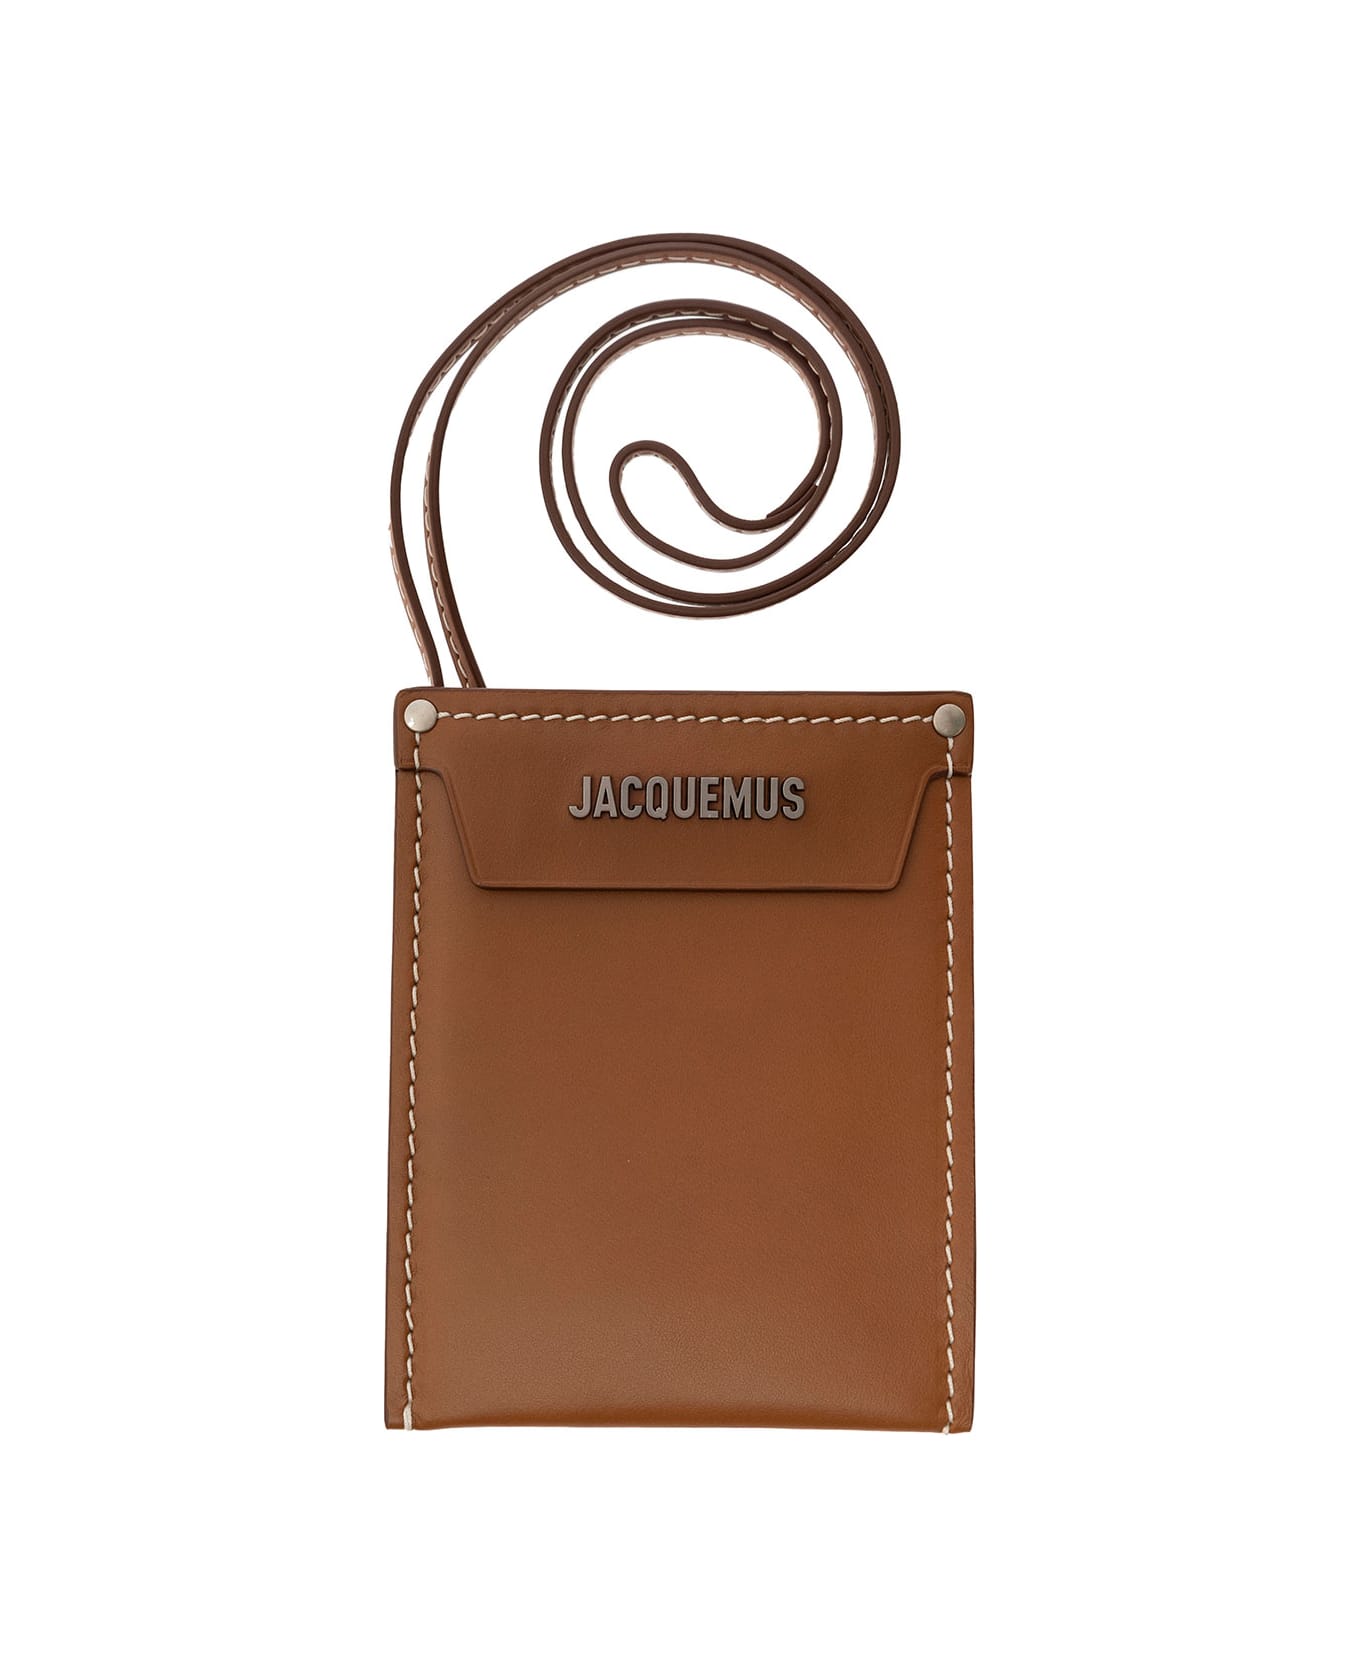 Le porte poche meunier leather wallet - Jacquemus - Men